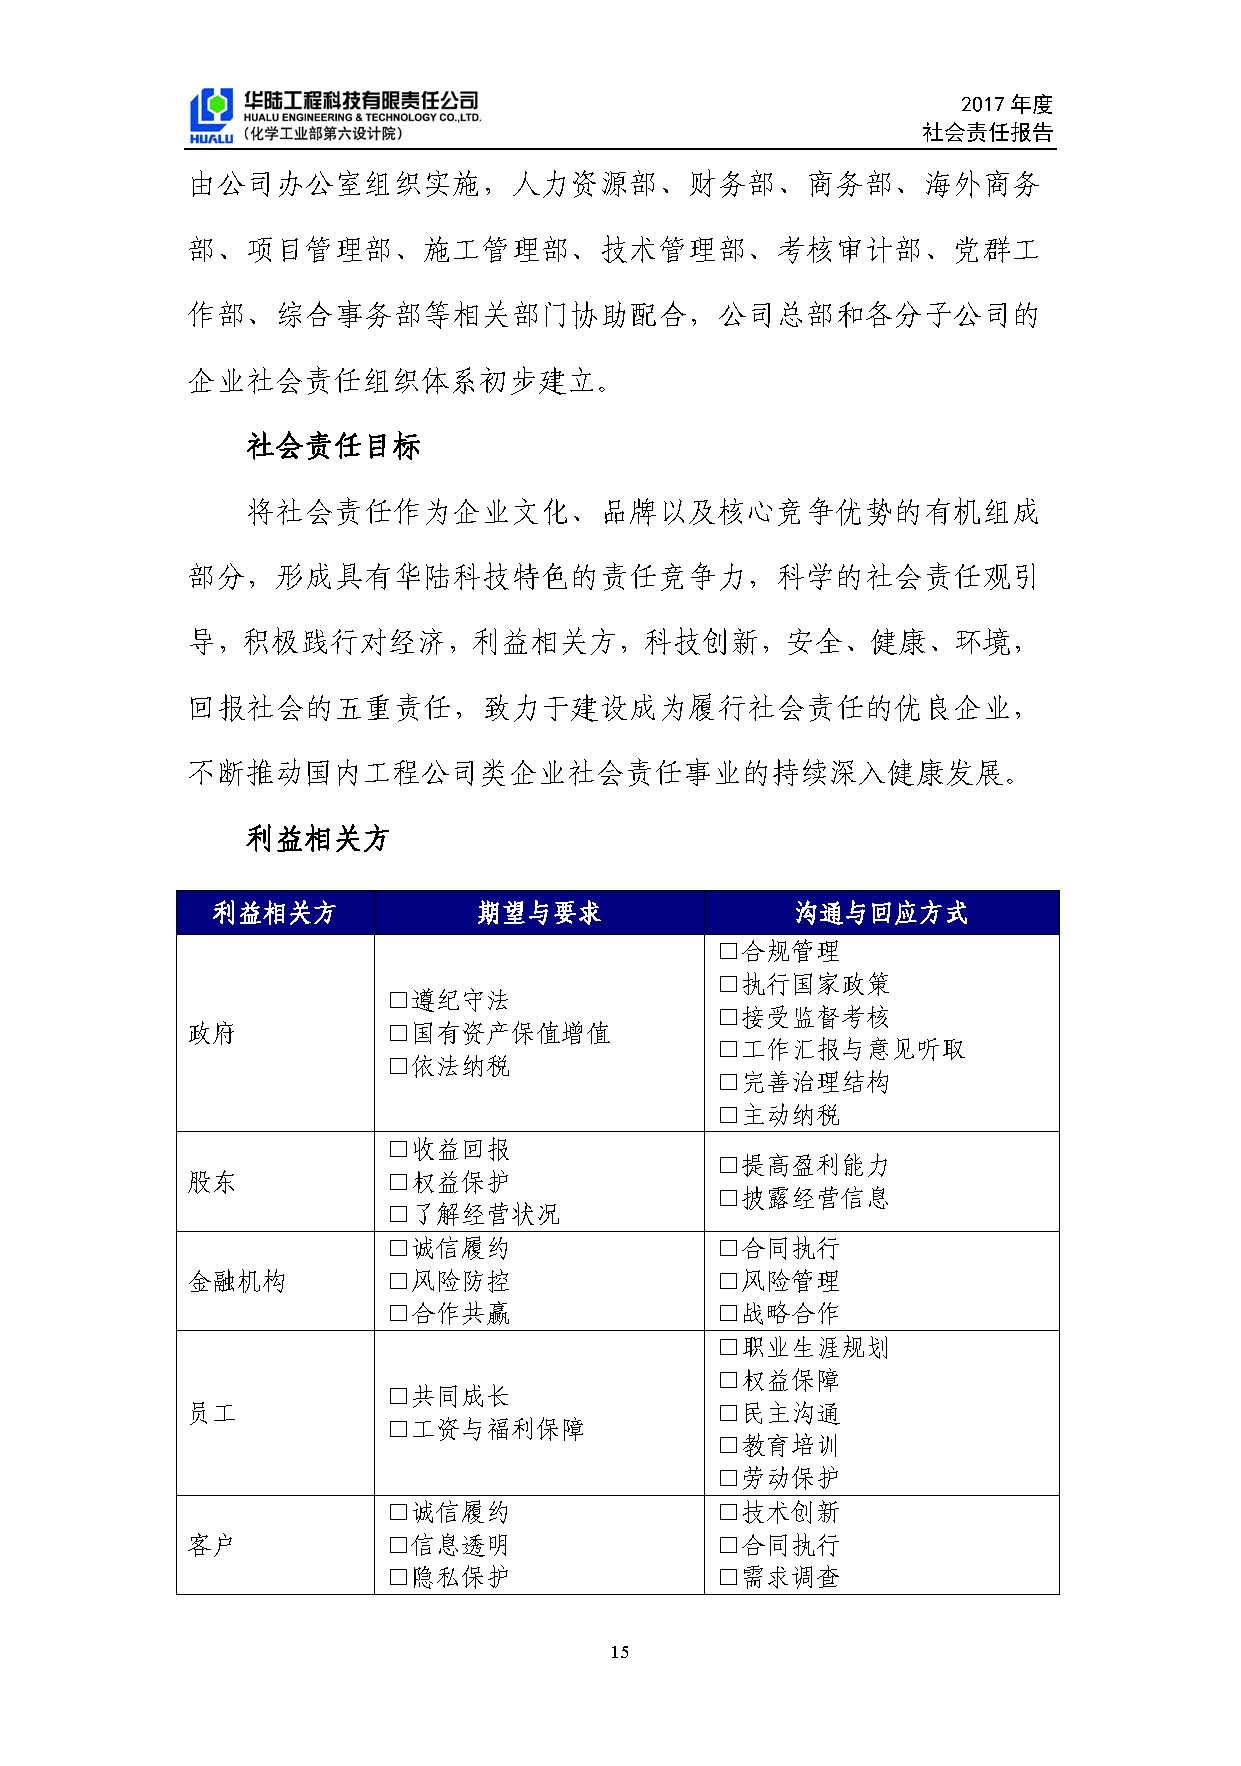 华陆工程科技有限责任公司2017年社会责任报告_页面_16.jpg